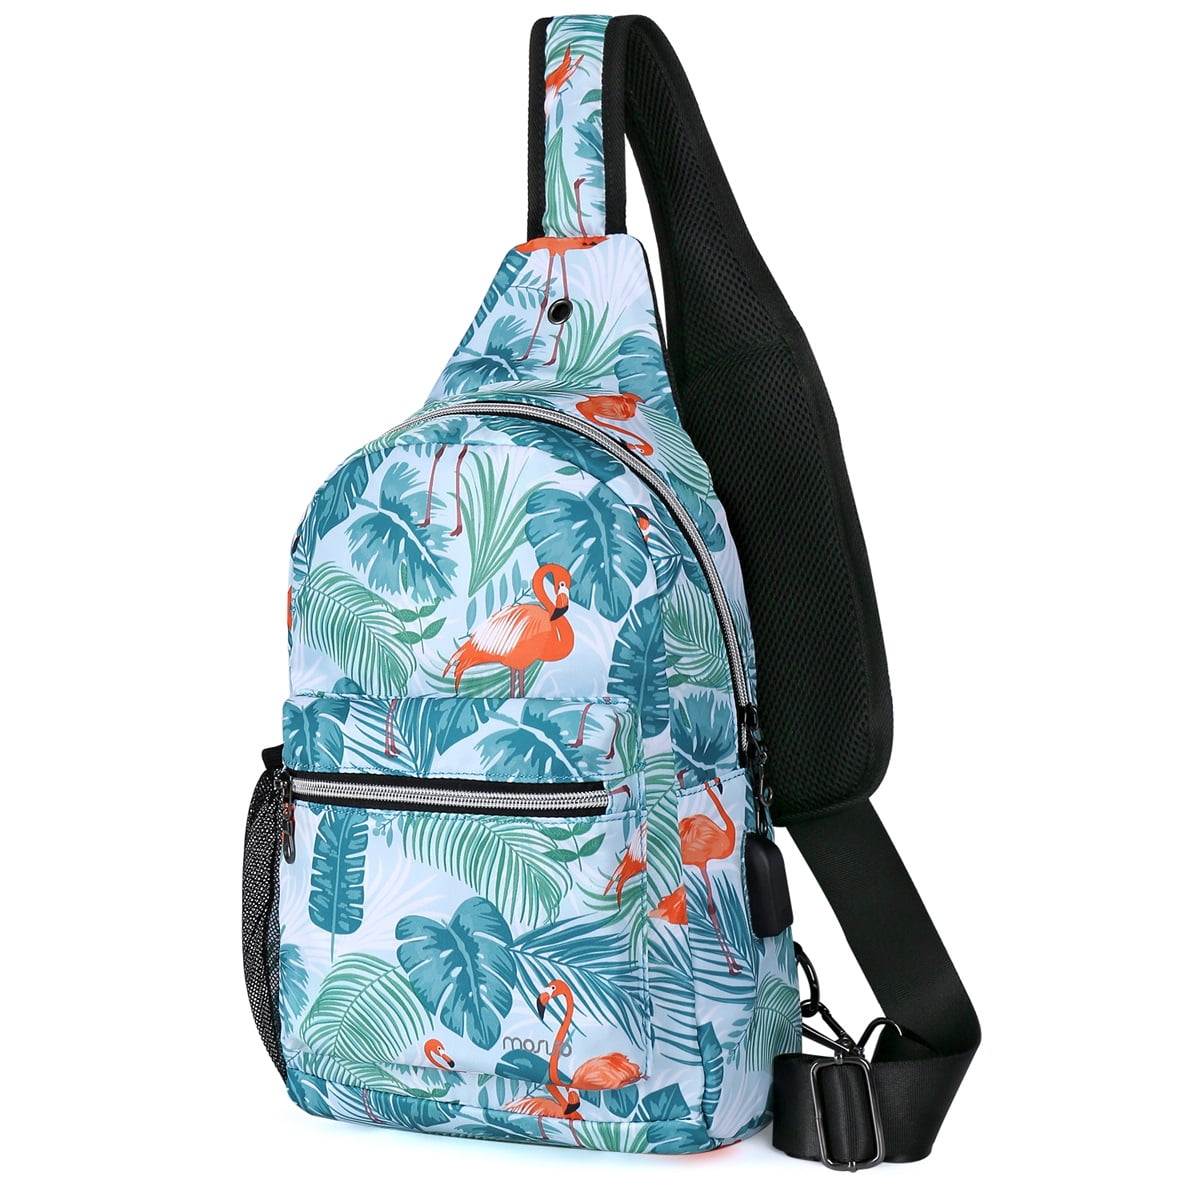 Unisex Sling Bag Crossbody Sling Backpack Mutilpurpose Shoulder Daypack with Adjustable Strap for Women Men Boys Girls